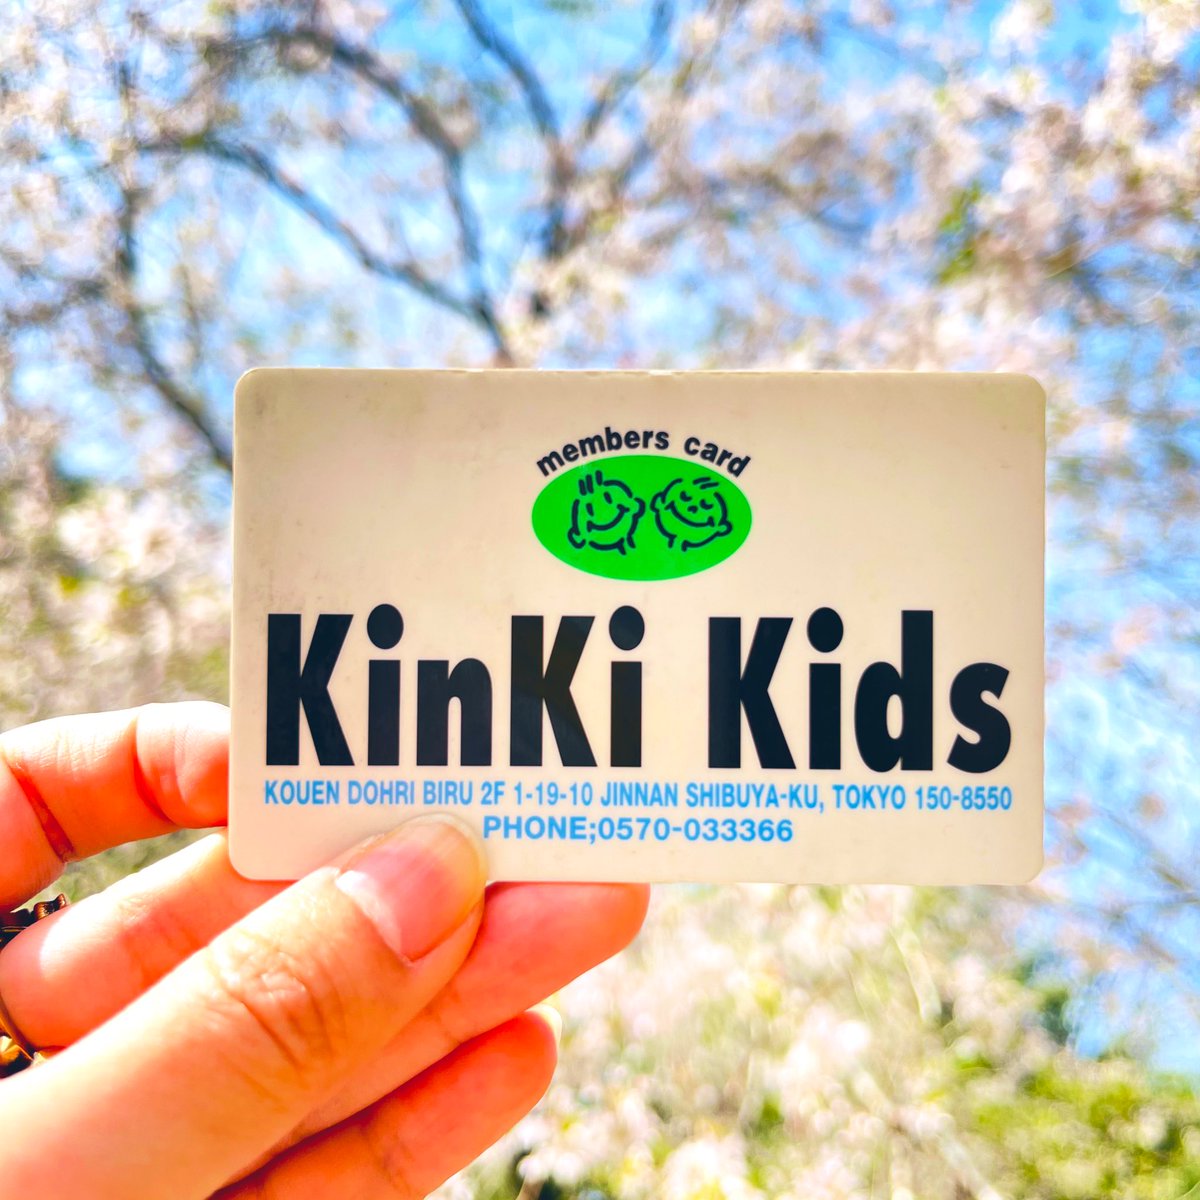 KinKi Kidsを諦めないでいてくれて、本当にほんとにありがとう。
ずっとふたりのファンでよかった。
これからも、なんねんたっても、ずーっと大好き。

 #KinKiKids
 #KinKiKidsFCありがとう